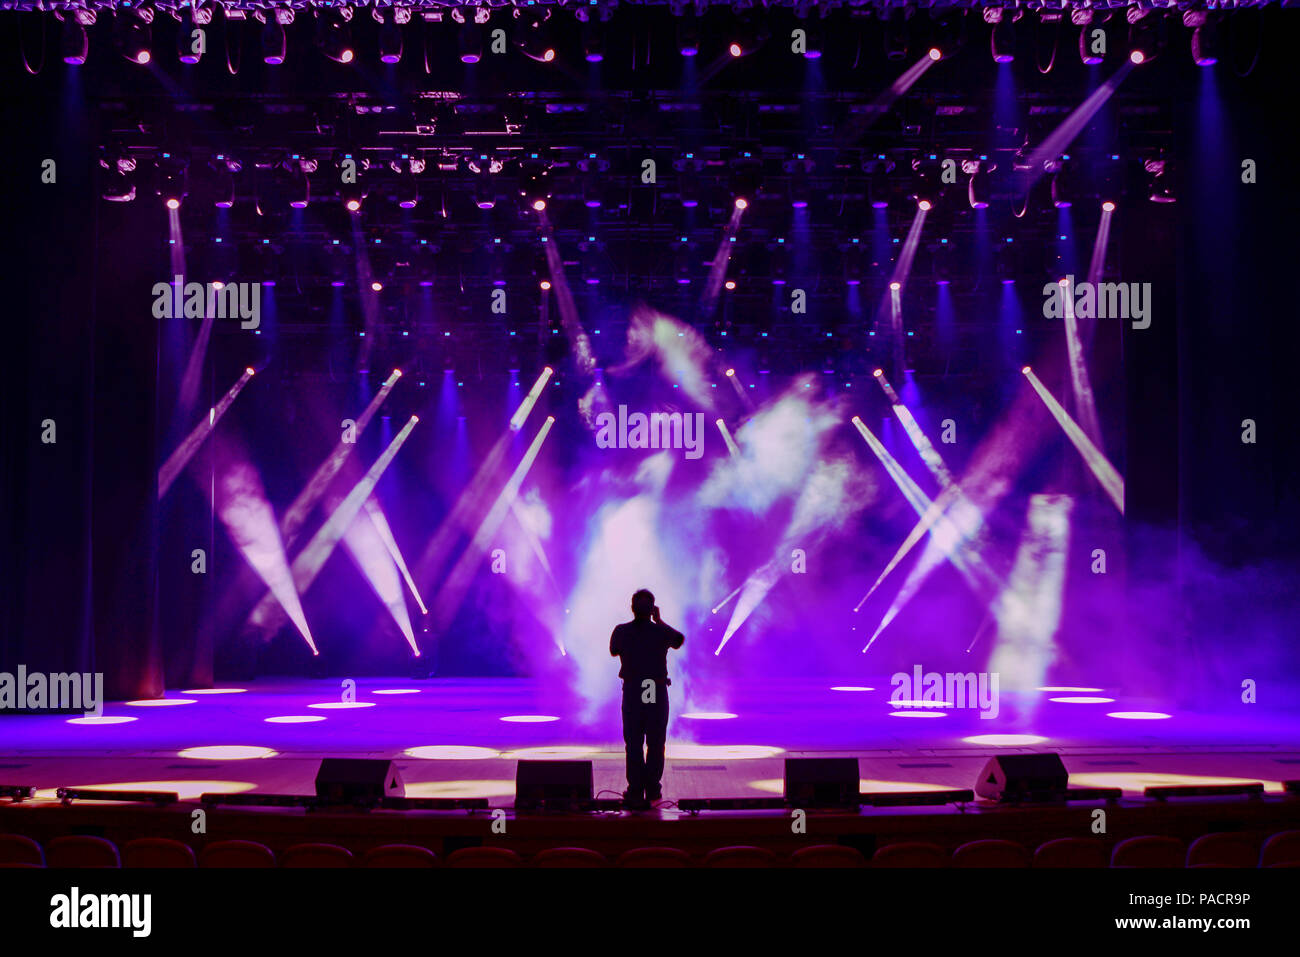 Singen Silhouette des Menschen auf eine hell erleuchtete Bühne vor dem Hintergrund der Strahlen der Leibungen und Scenic Nebelschlussleuchte Stockfoto